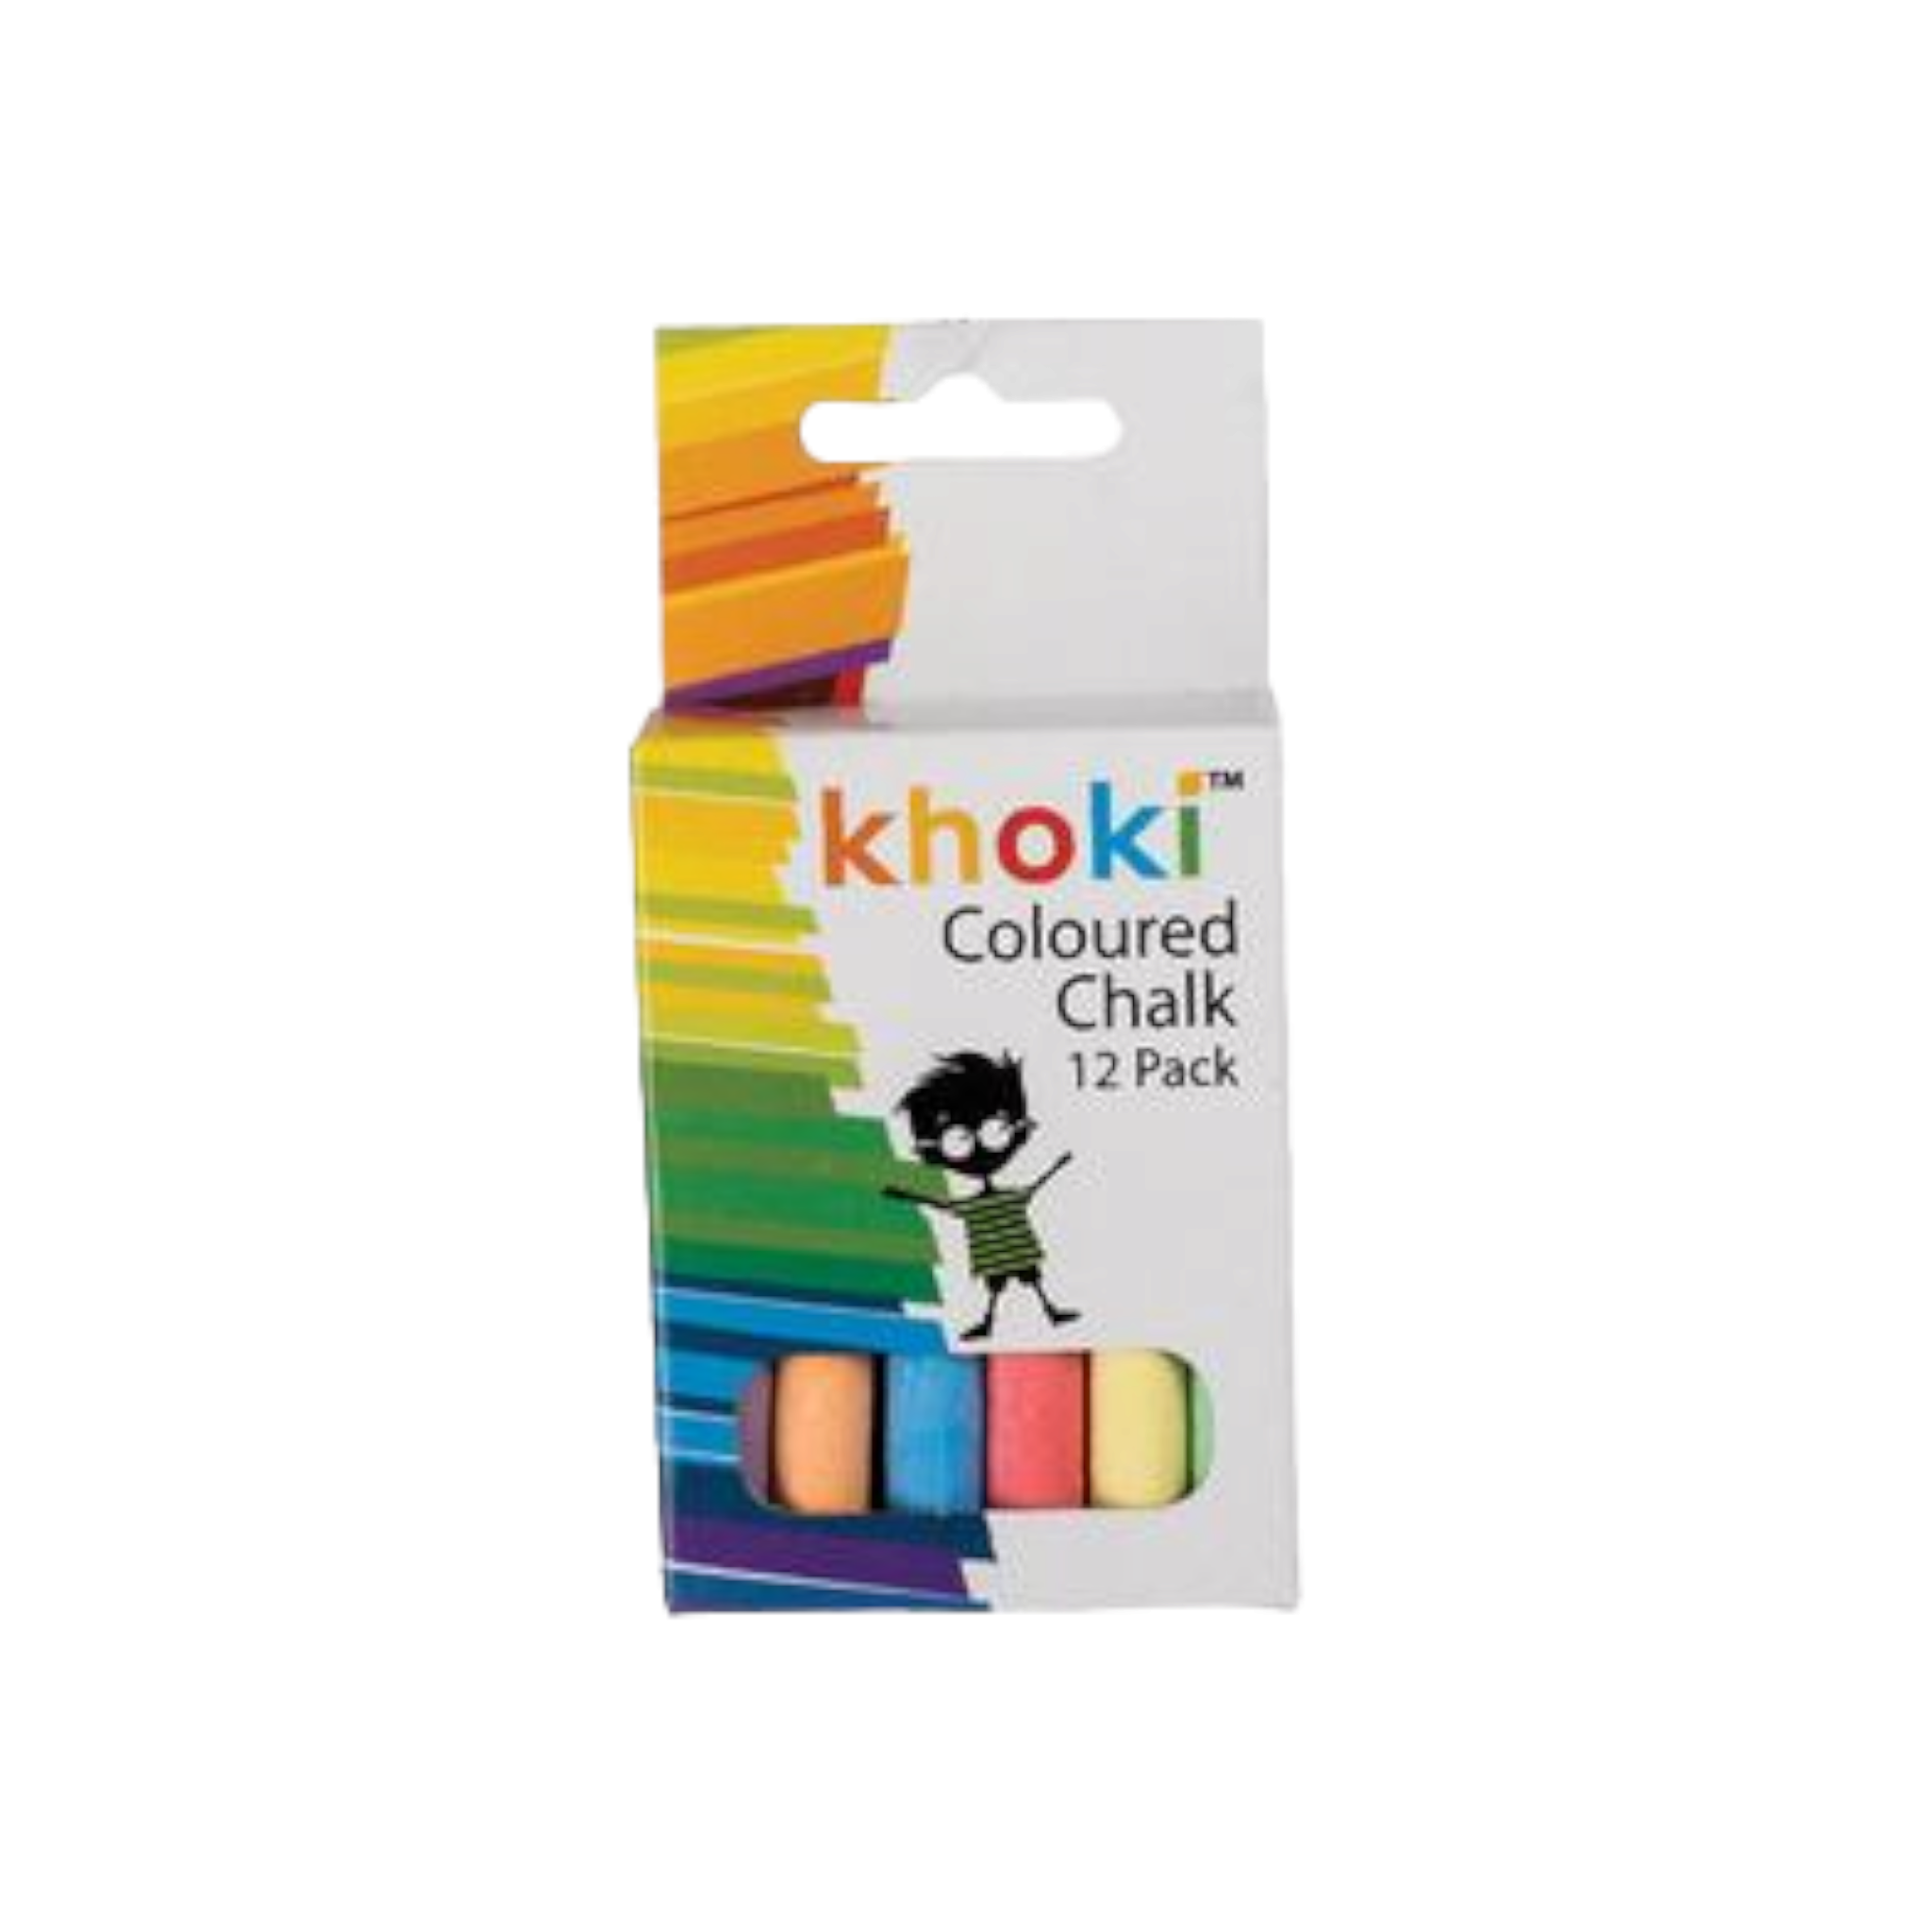 Khoki Coloured Chalk Assorted 12pcs